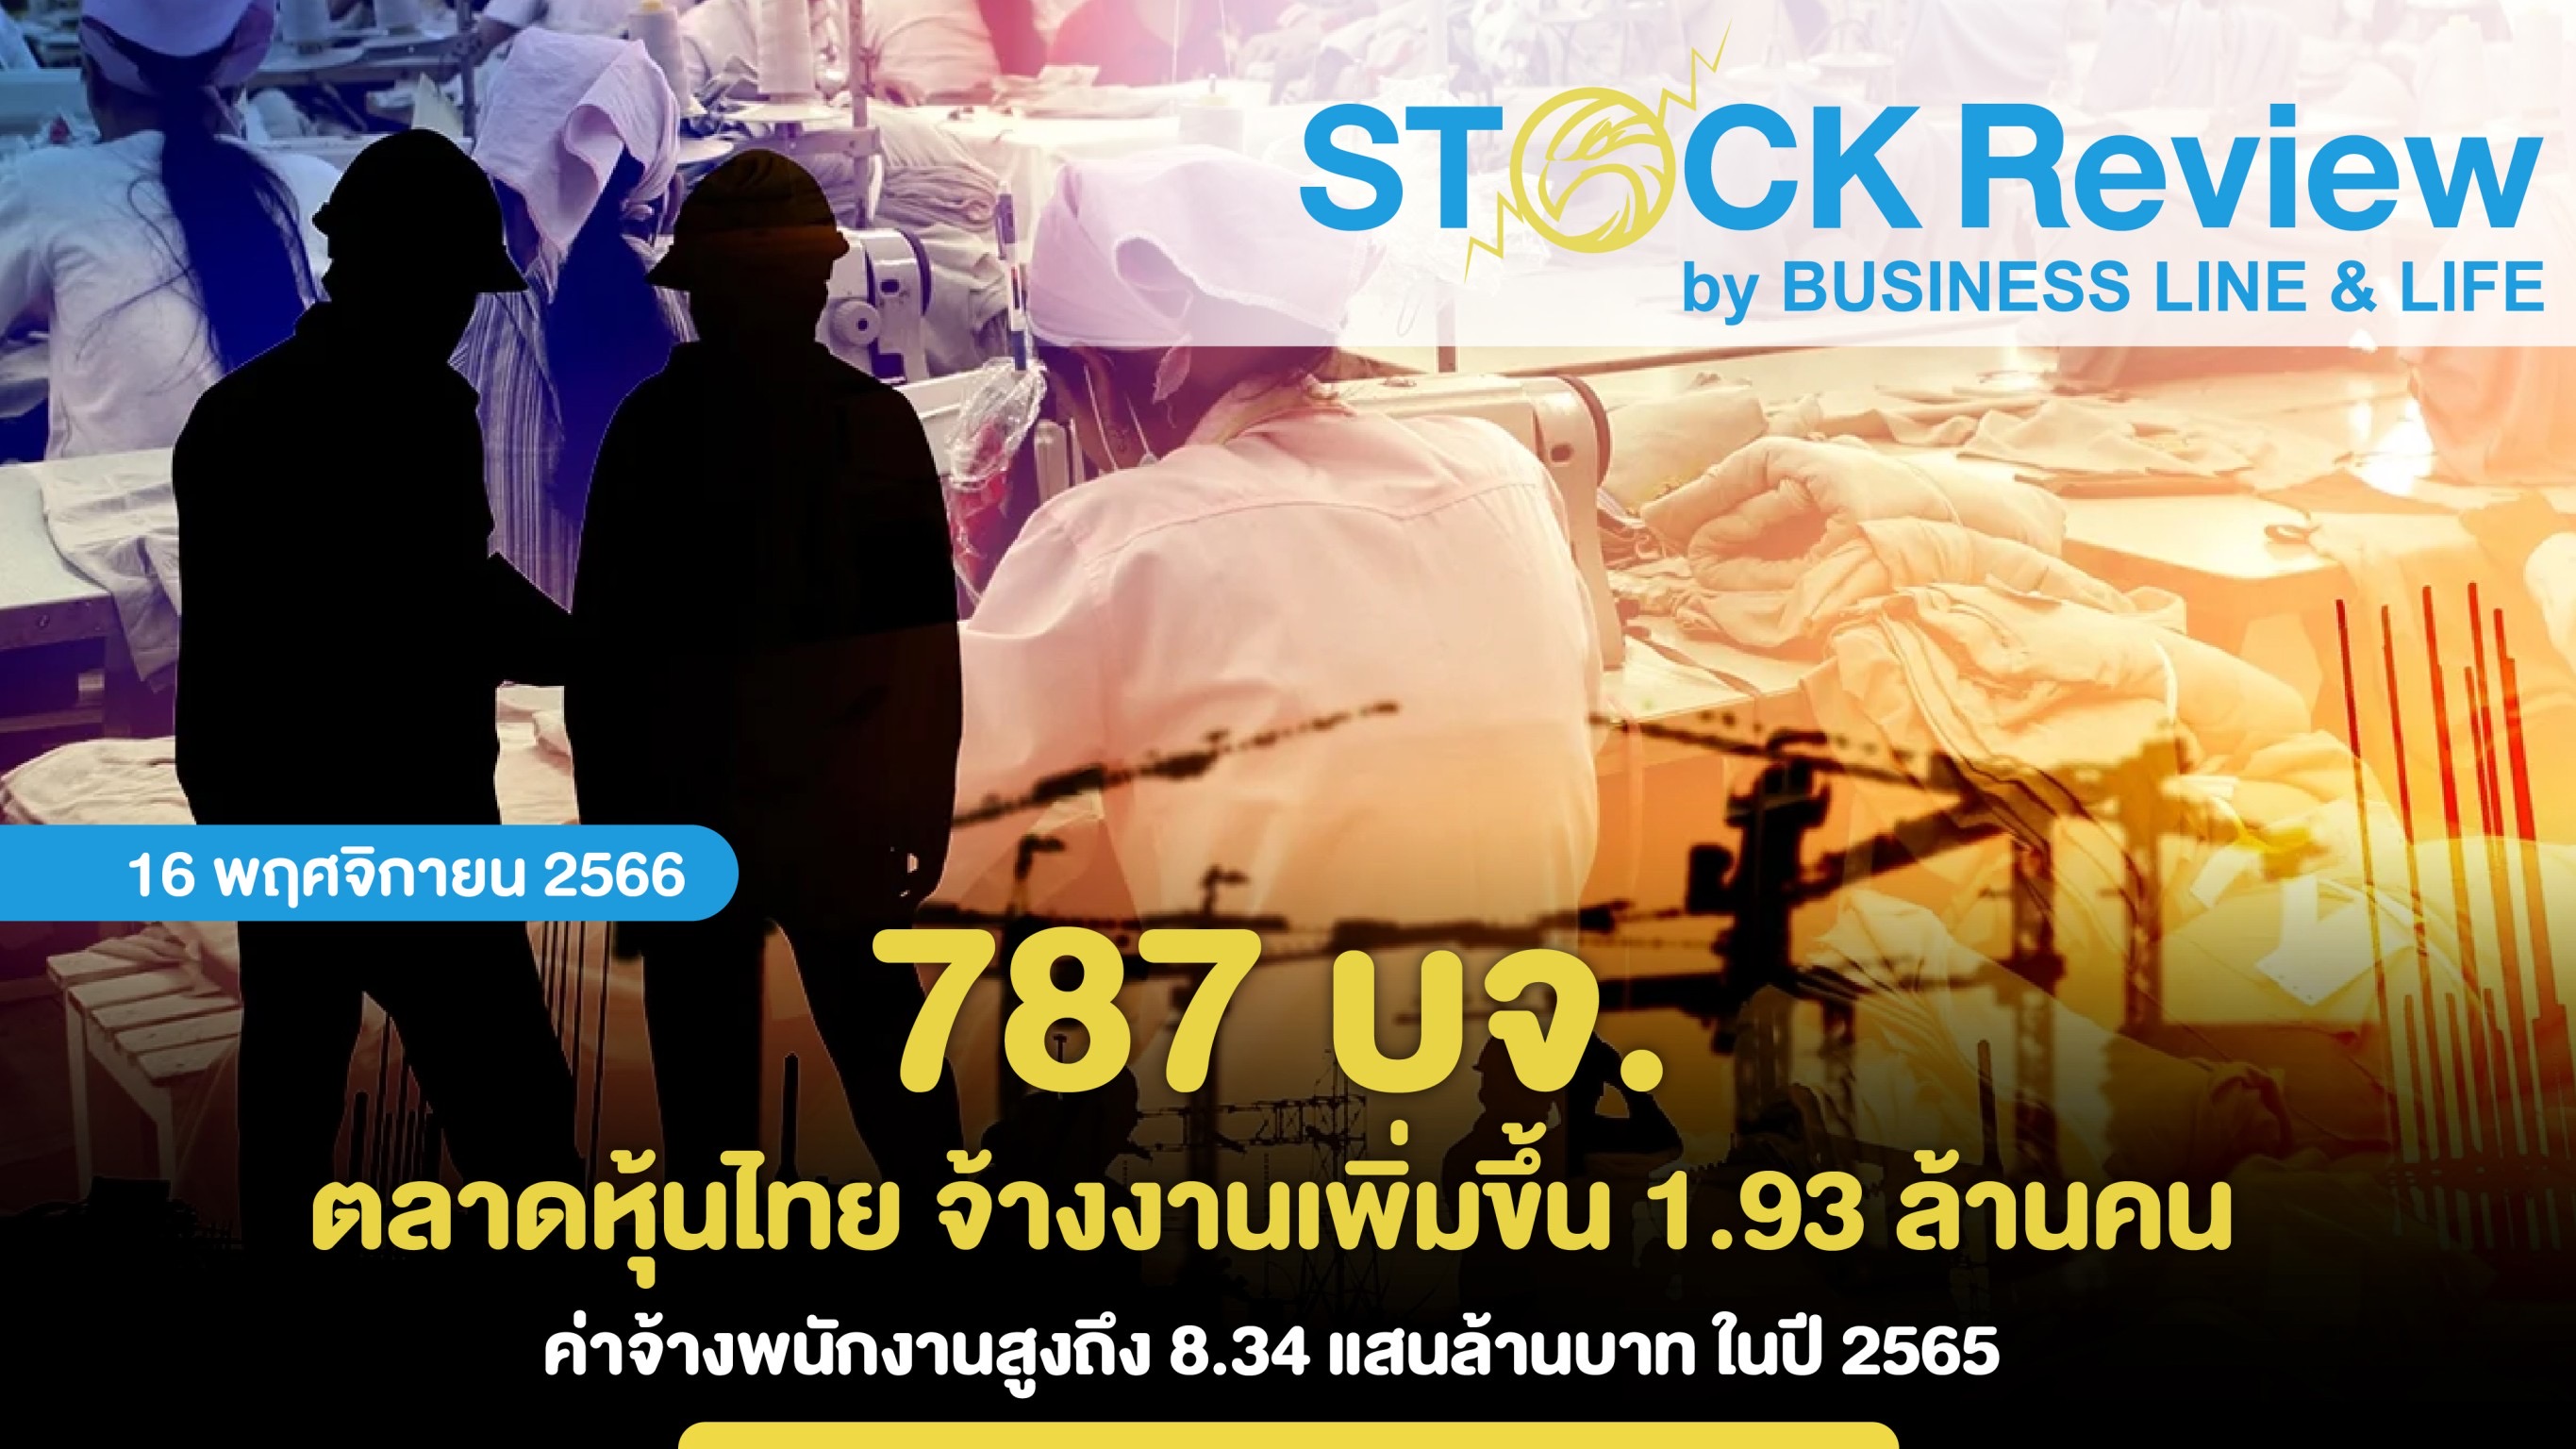 787 บจ.ตลาดหุ้นไทย จ้างงานเพิ่มขึ้น 1.93 ล้านคน ค่าจ้างพนักงานสูงถึง 8.34 แสนล้านบาท ในปี 2565